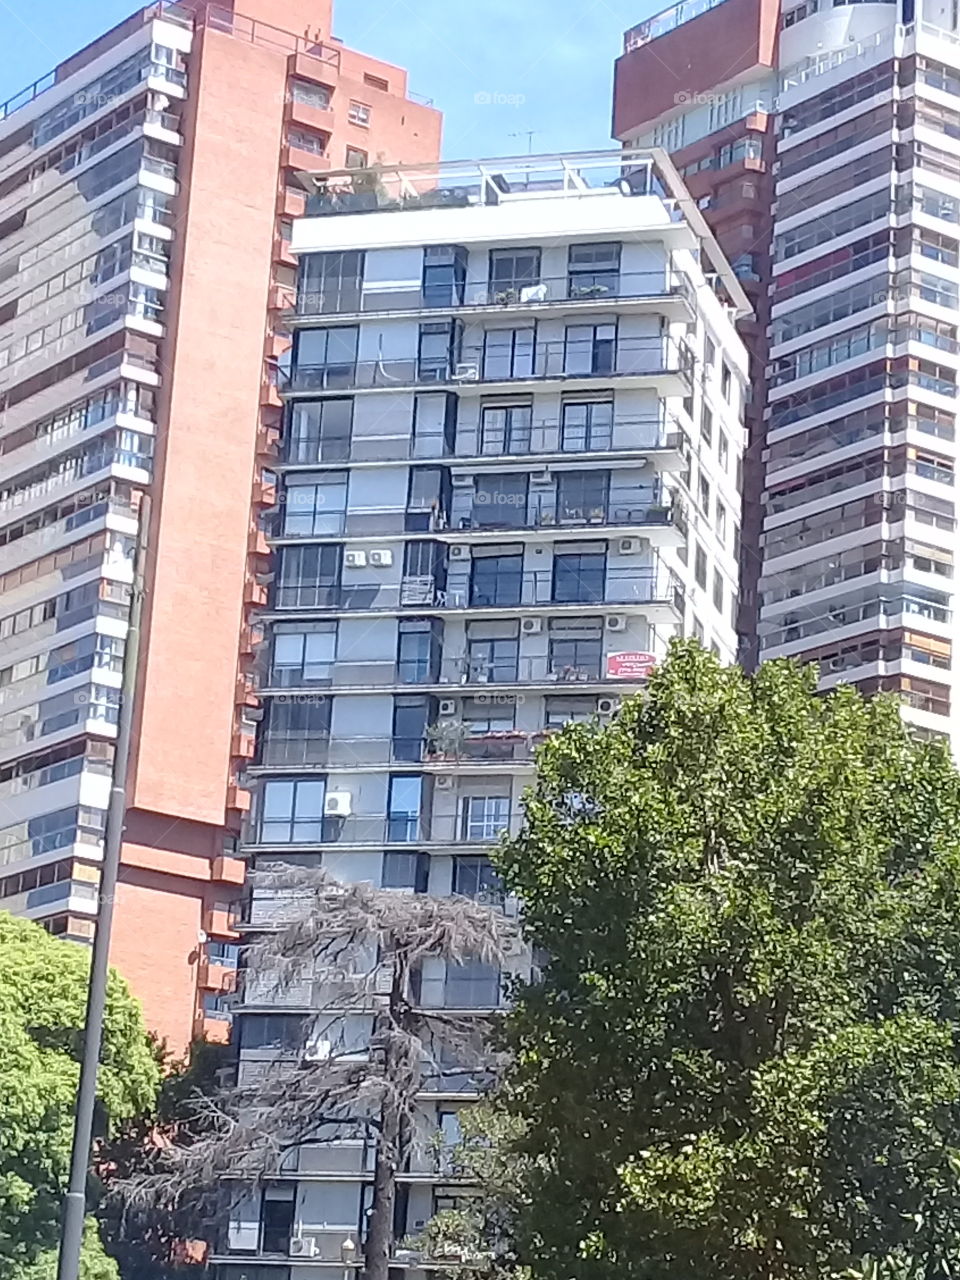 conjunto de modernas edificaciones urbanas destinadas a oficinas, ubicadas en una céntrica avenida de la ciudad de Buenos Aires.